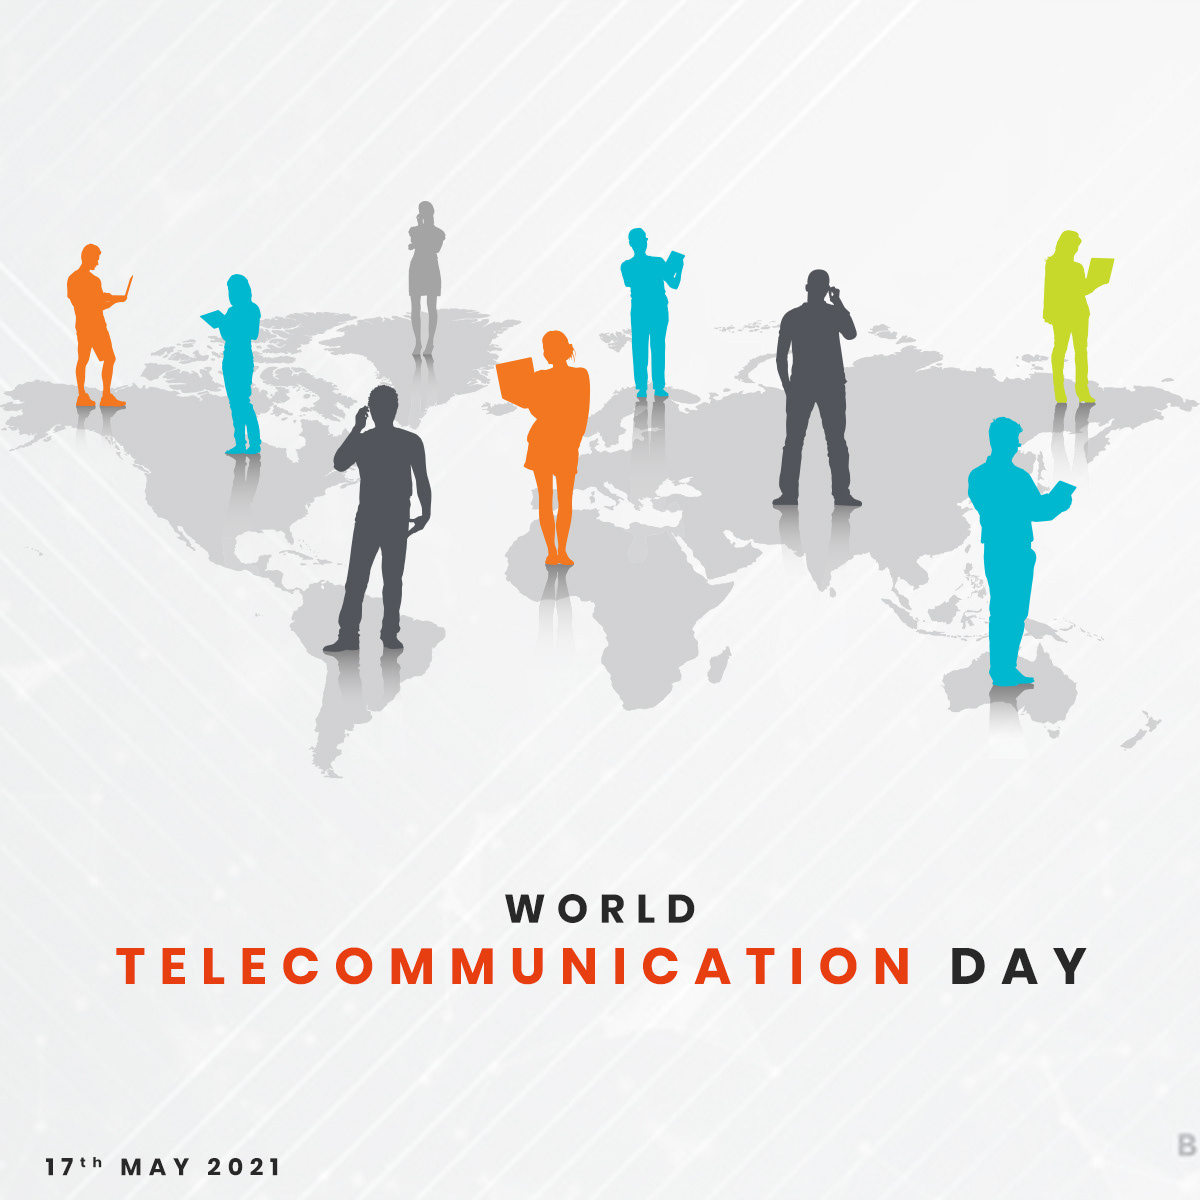 #communication #telecommunication